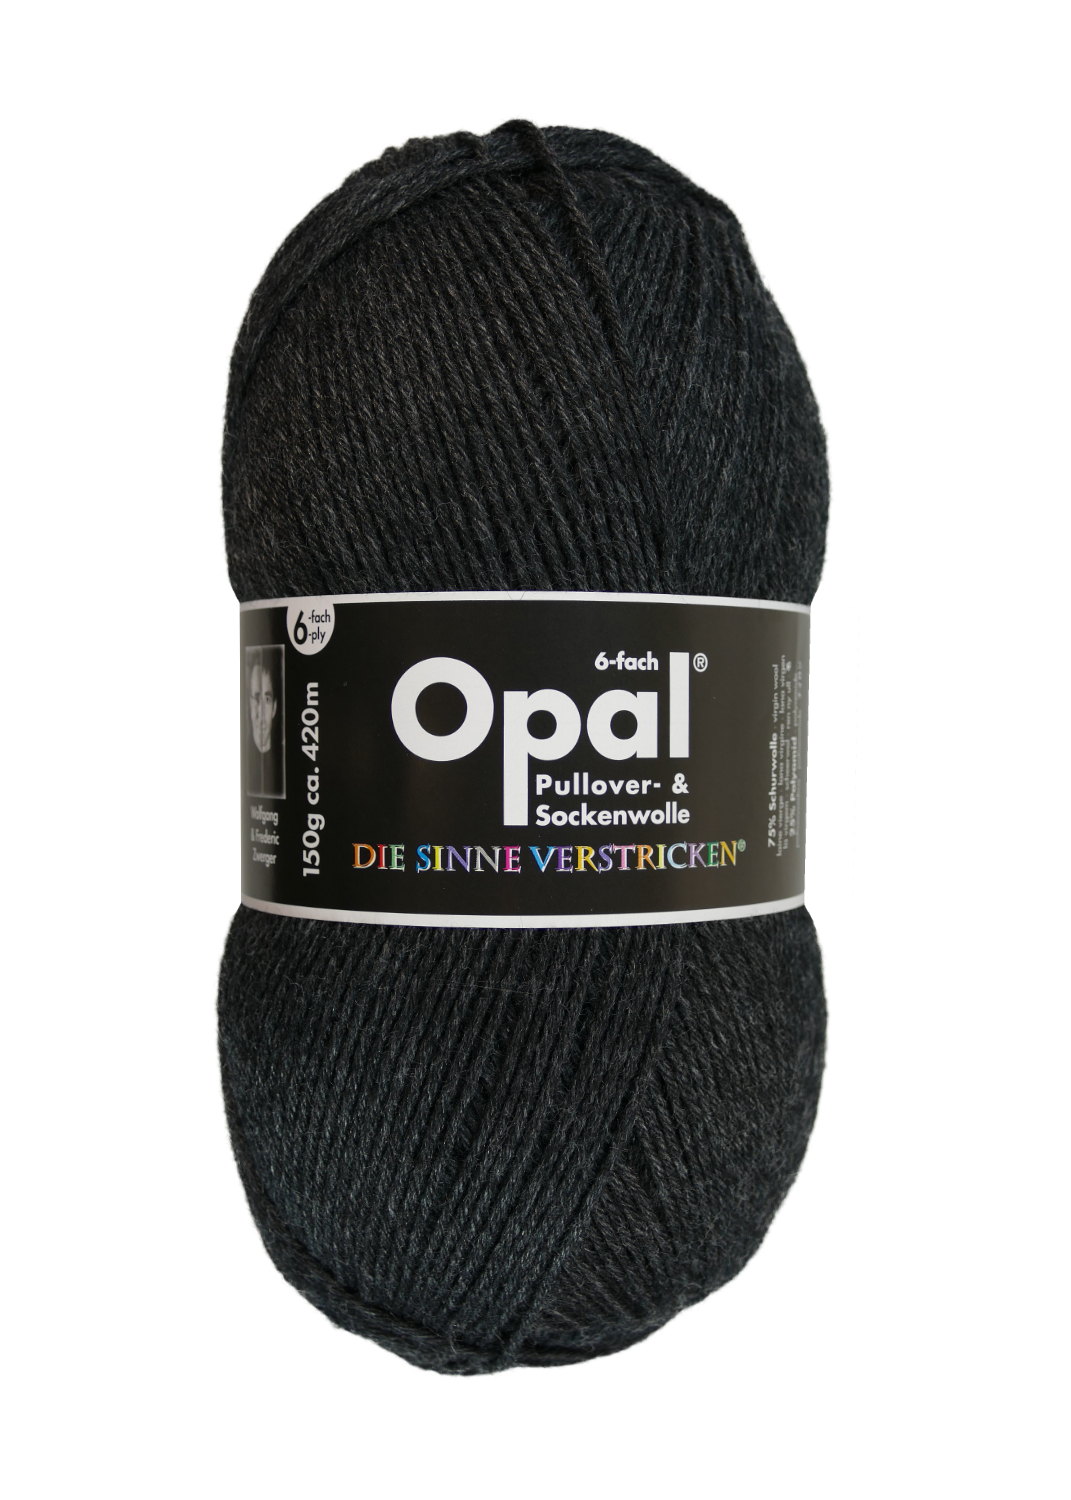 Sockenwolle Uni - 6-fach 150 g von OPAL 5303 - anthrazit